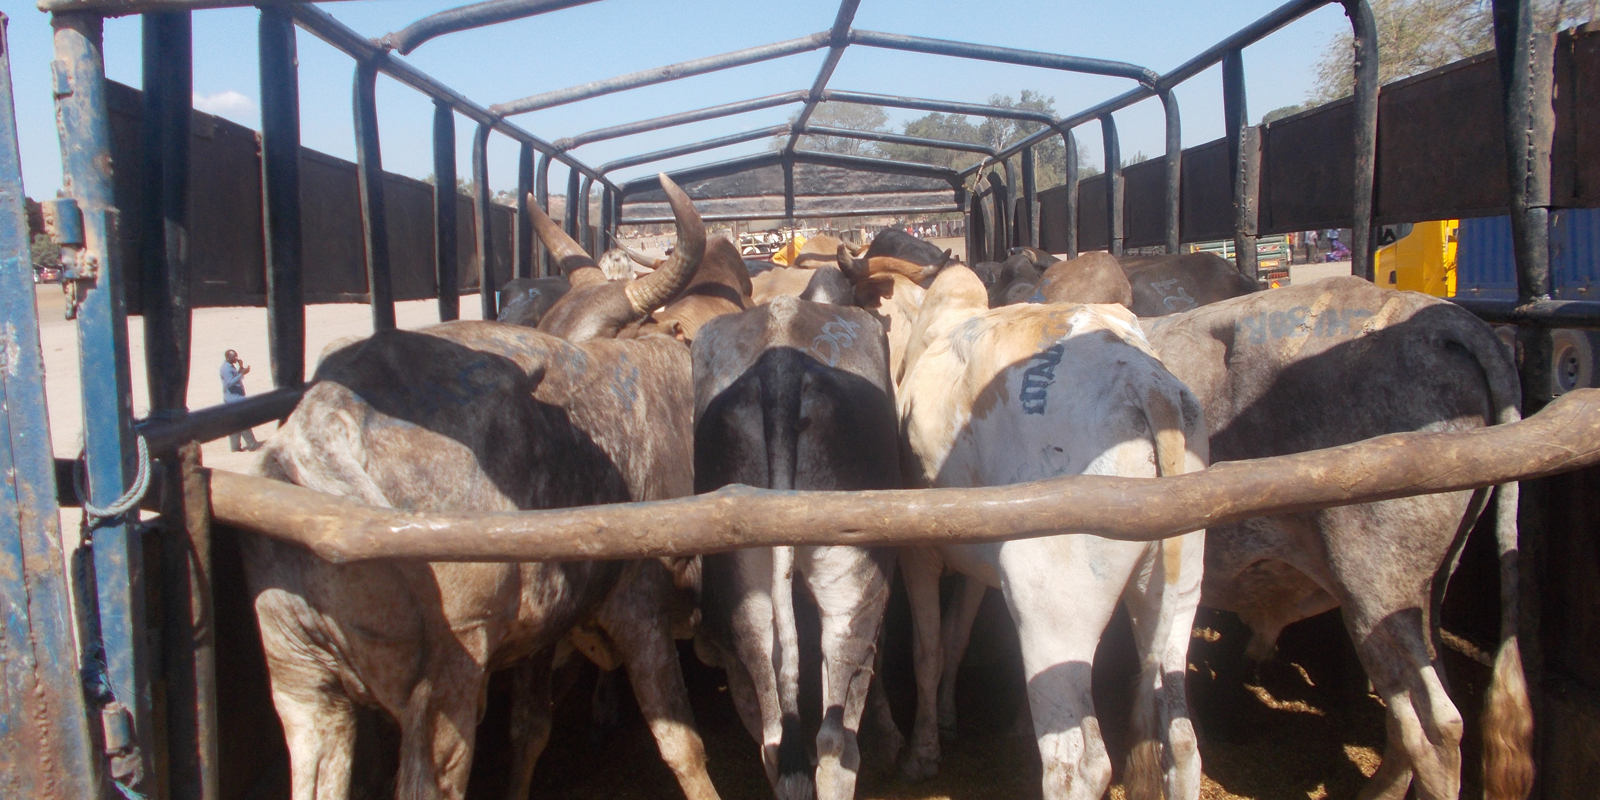 Tiermärkte in Tansania: Zusammengepfercht und ungesichert drängen sich Rinder auf der Ladefläche eines LKW